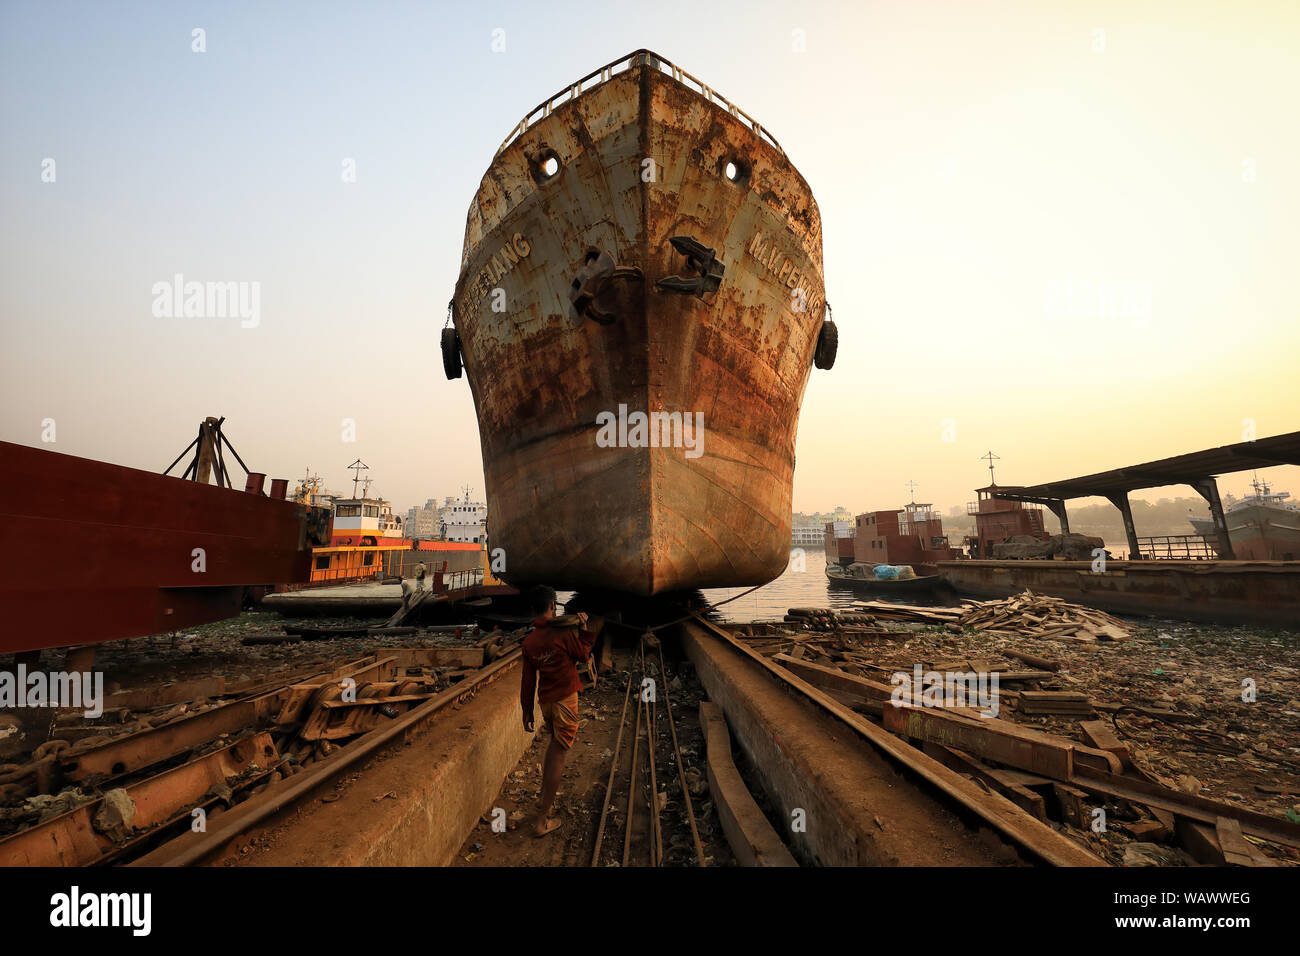 Les quais dans un chantier naval à Dhaka, au Bangladesh. La construction navale dans le Bangladesh est devenu une industrie majeure au cours des dernières années. Banque D'Images